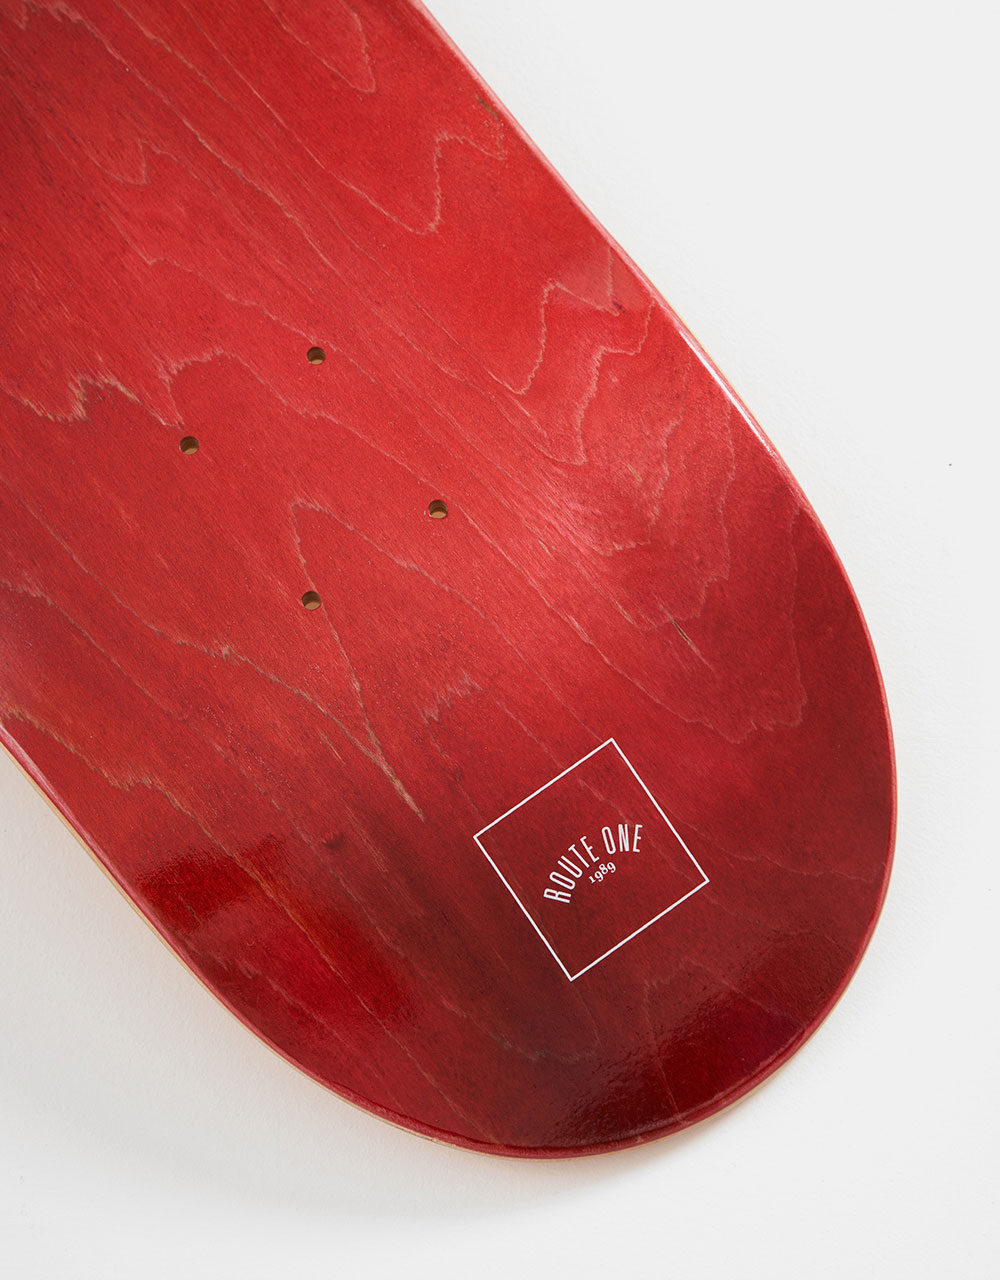 Route One Mini Logo 'OG Shape' Skateboard Deck - Red/White